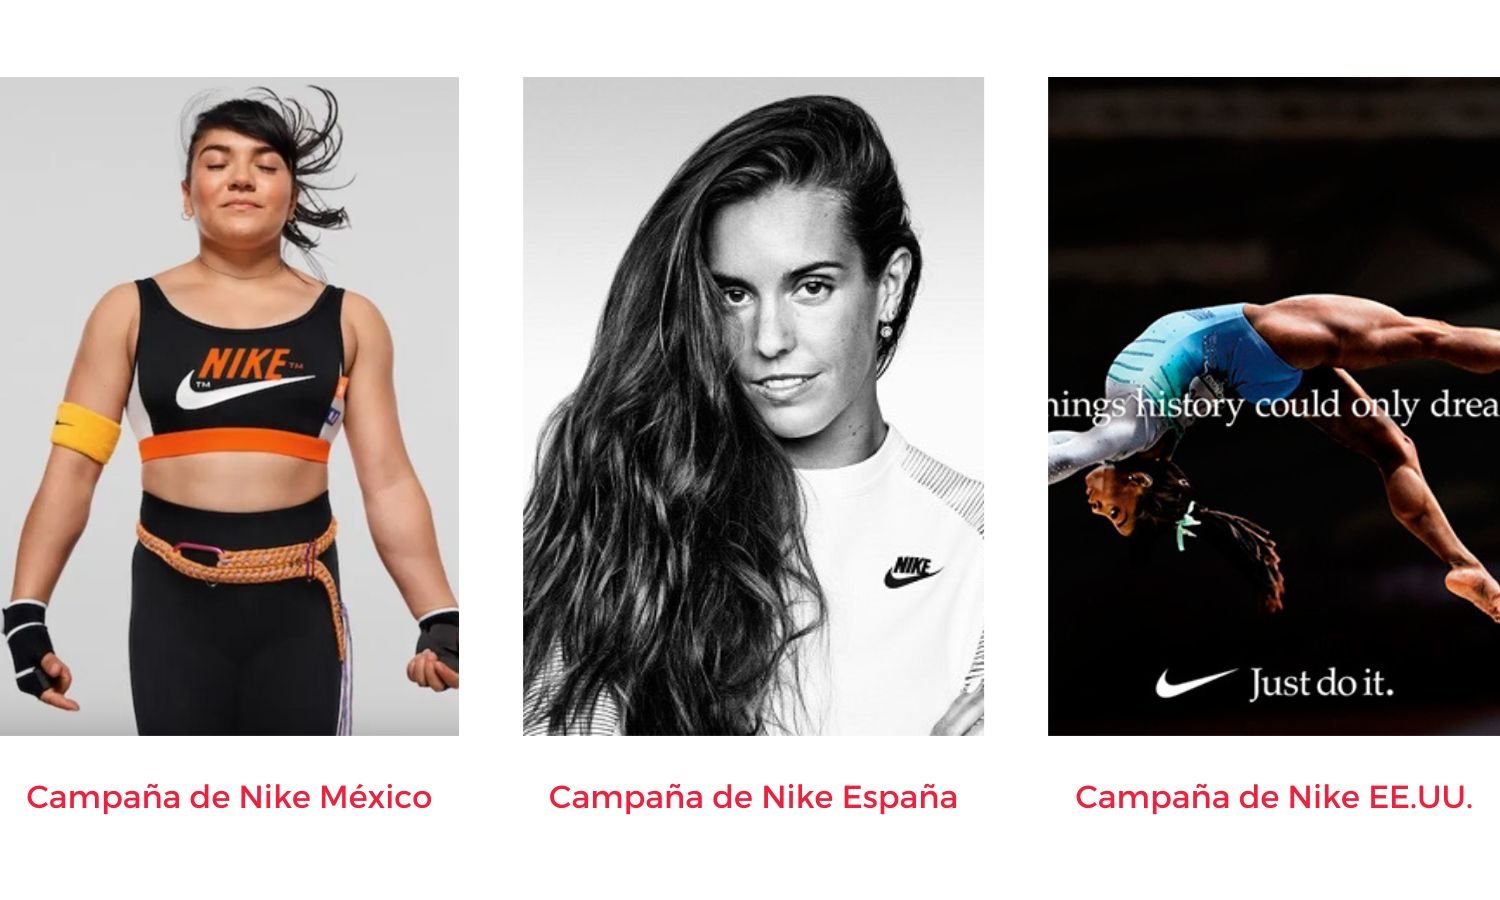 Campaña de Nike